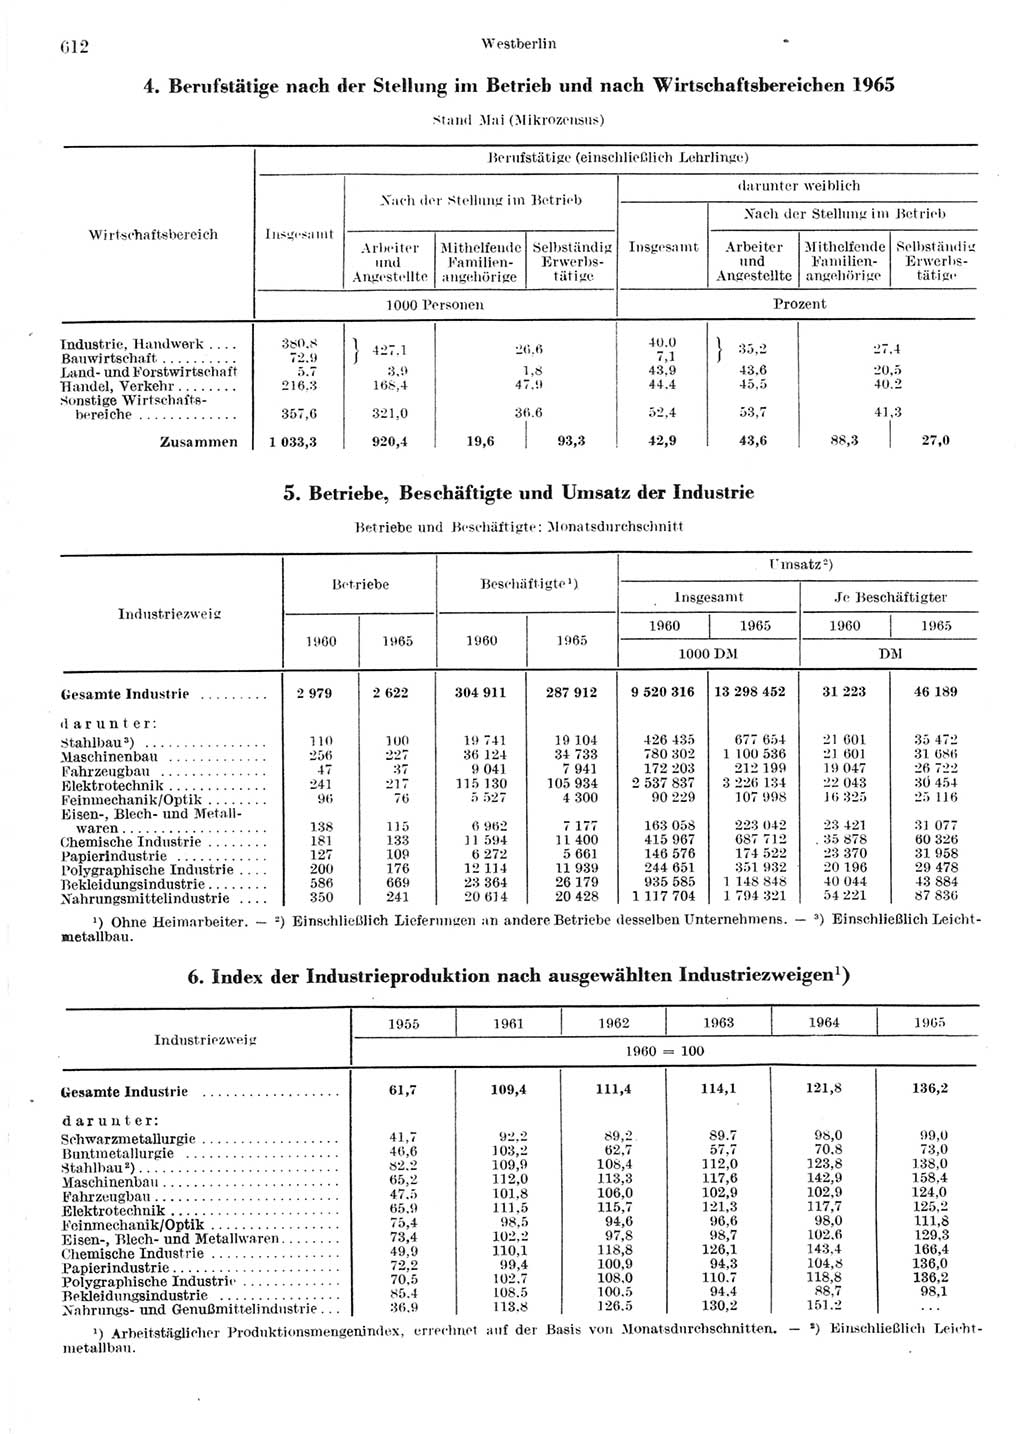 Statistisches Jahrbuch der Deutschen Demokratischen Republik (DDR) 1967, Seite 612 (Stat. Jb. DDR 1967, S. 612)